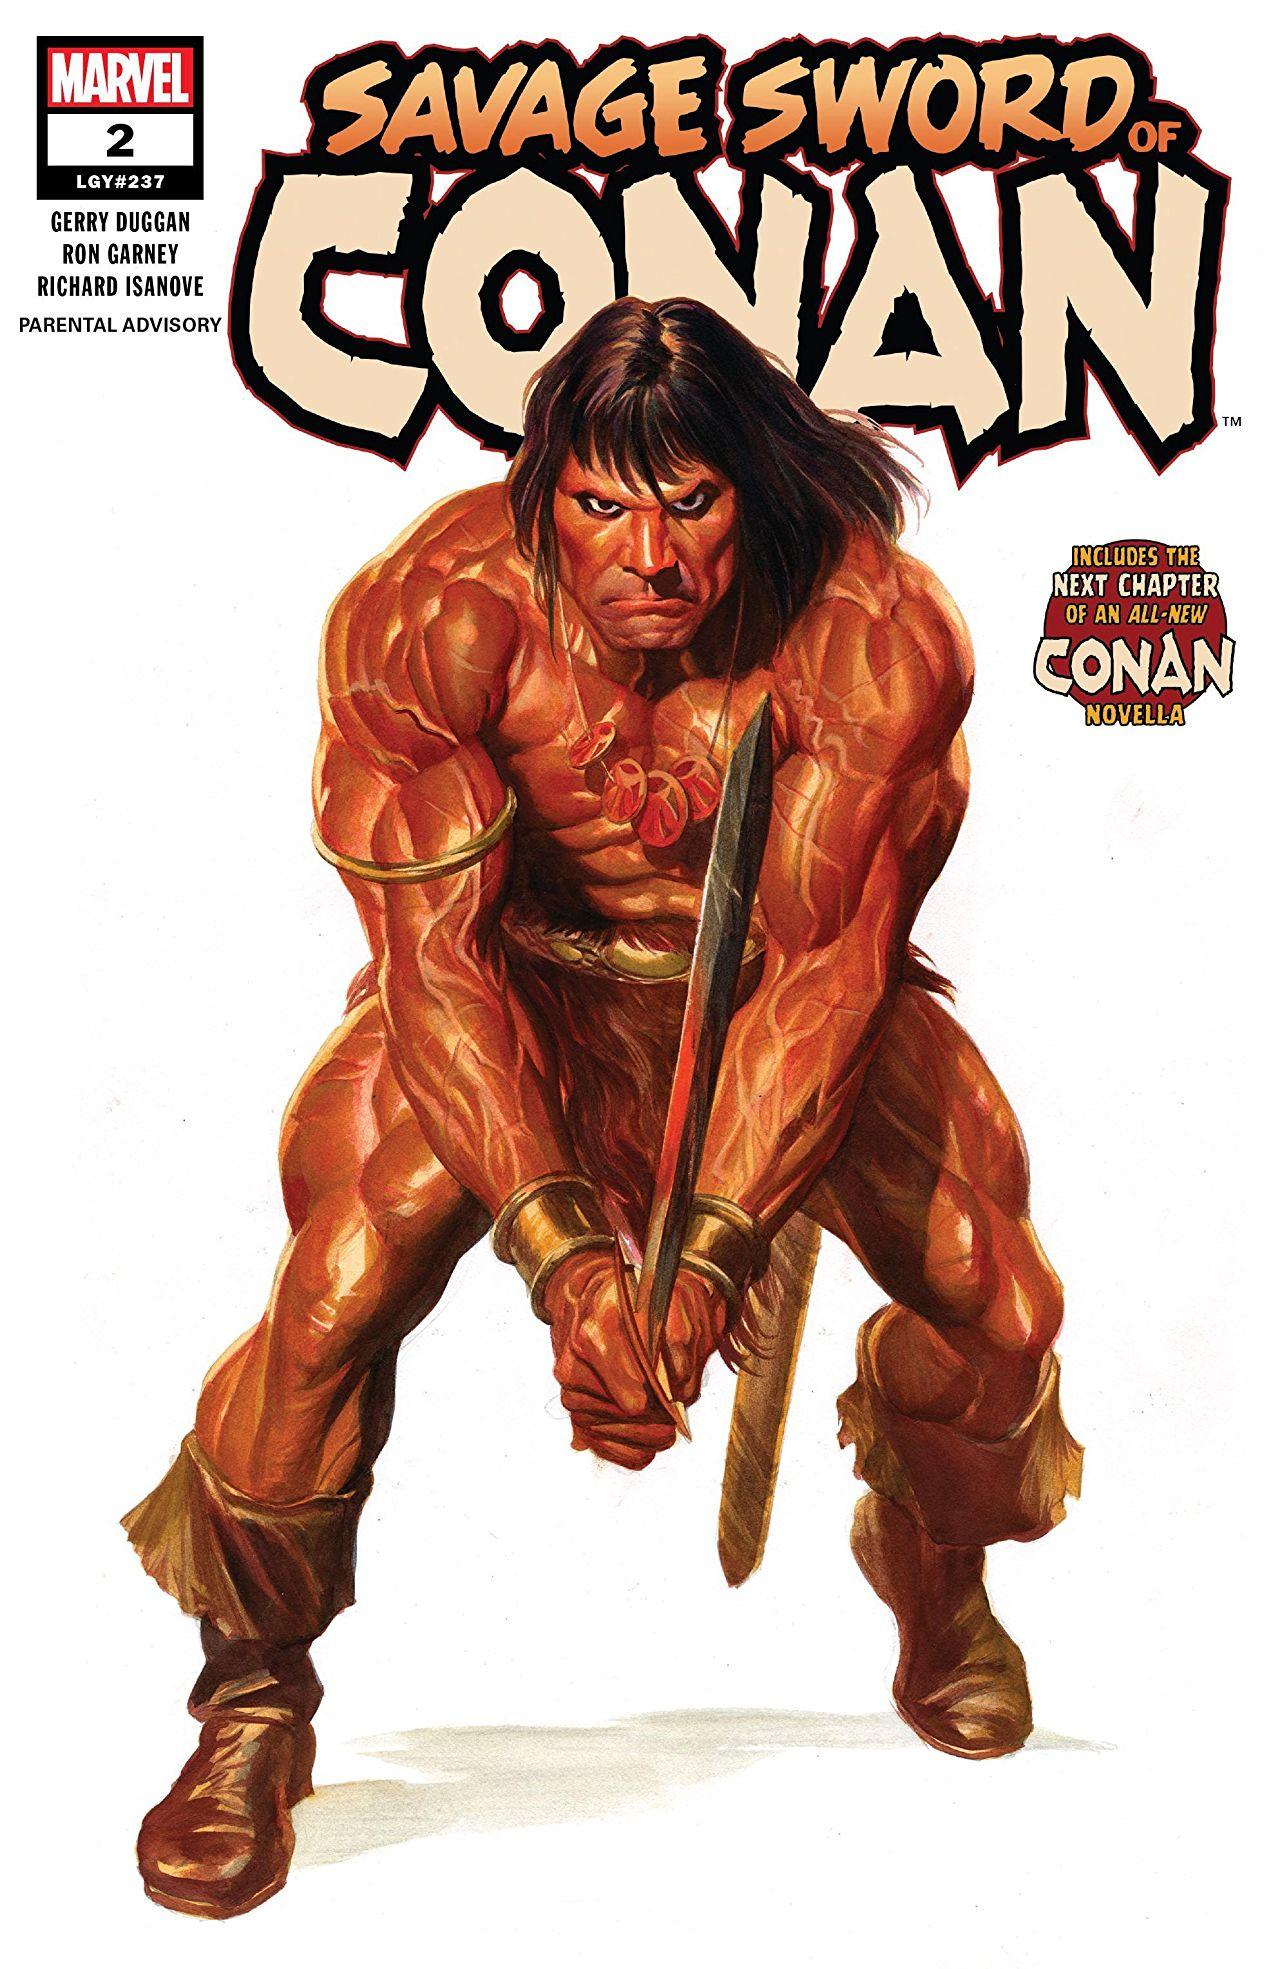 Savage Sword of Conan Vol. 2 #2